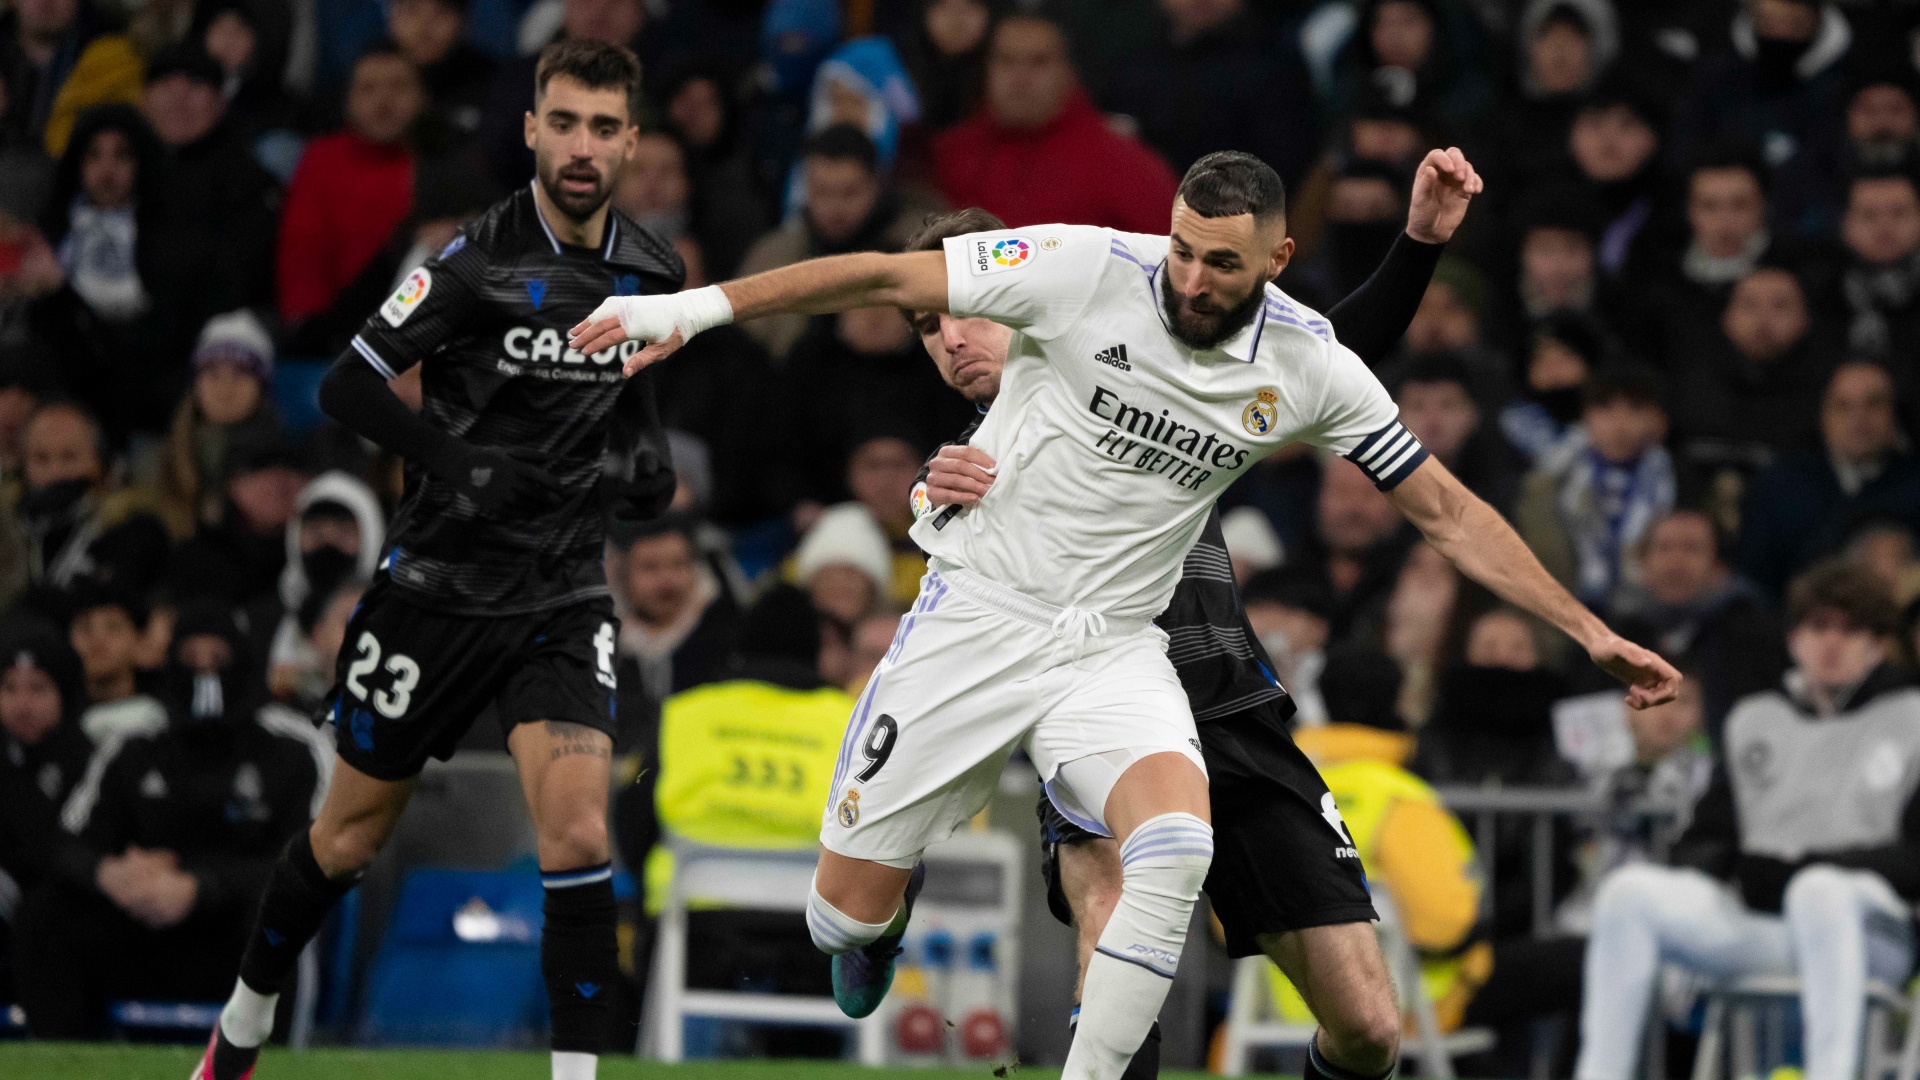 Real Sociedad 2-0 Real Madrid, La Liga: resultado, goles y resumen